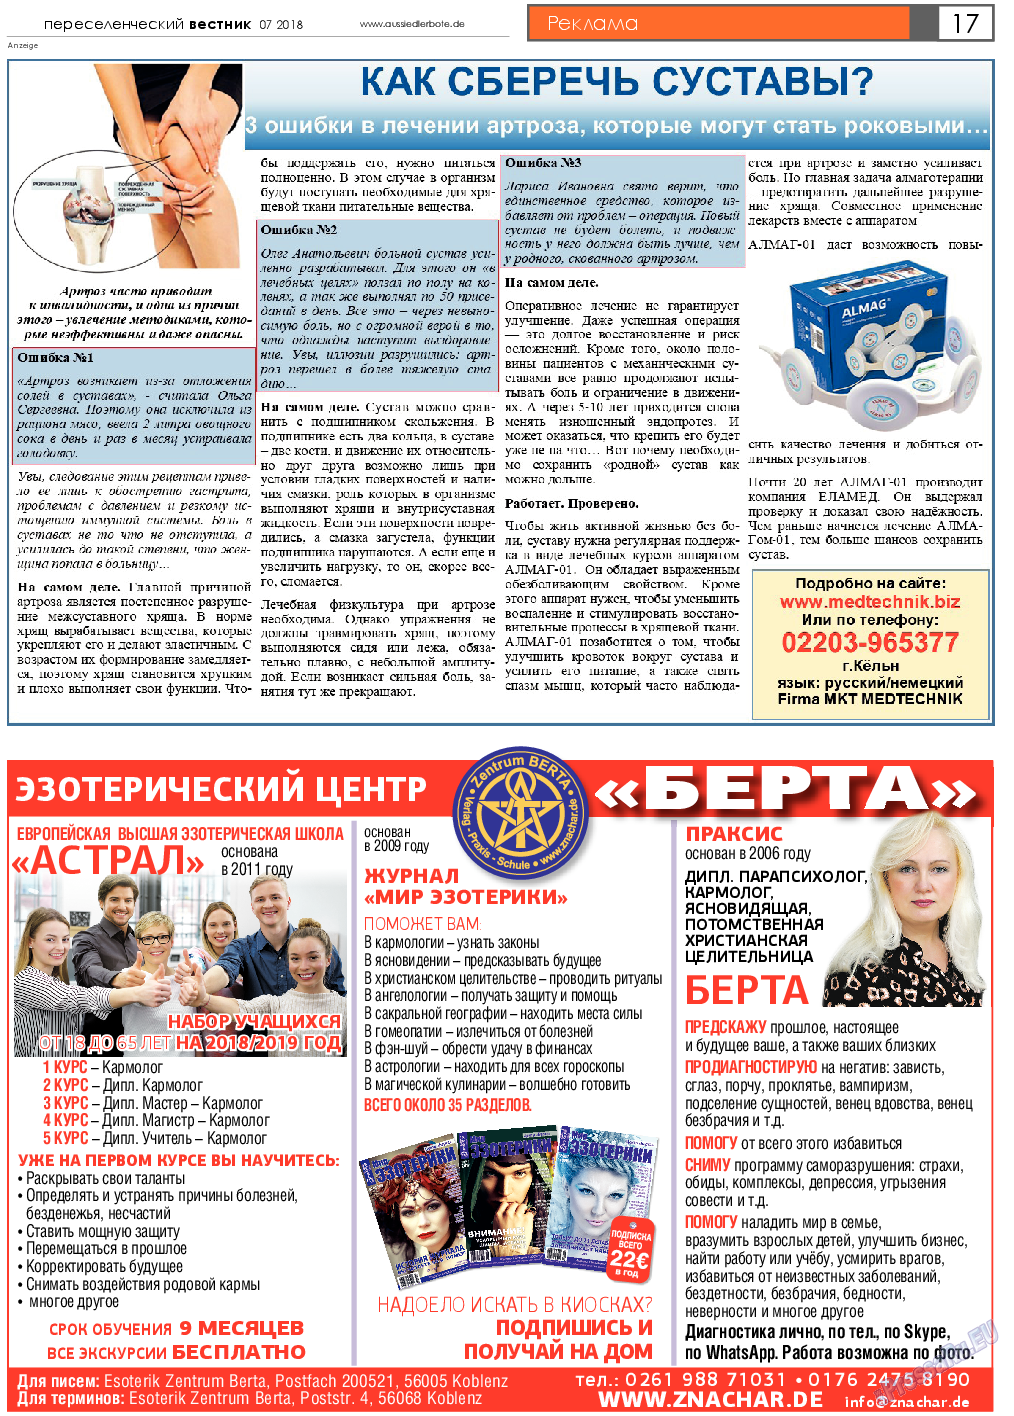 Переселенческий вестник (газета). 2018 год, номер 7, стр. 17